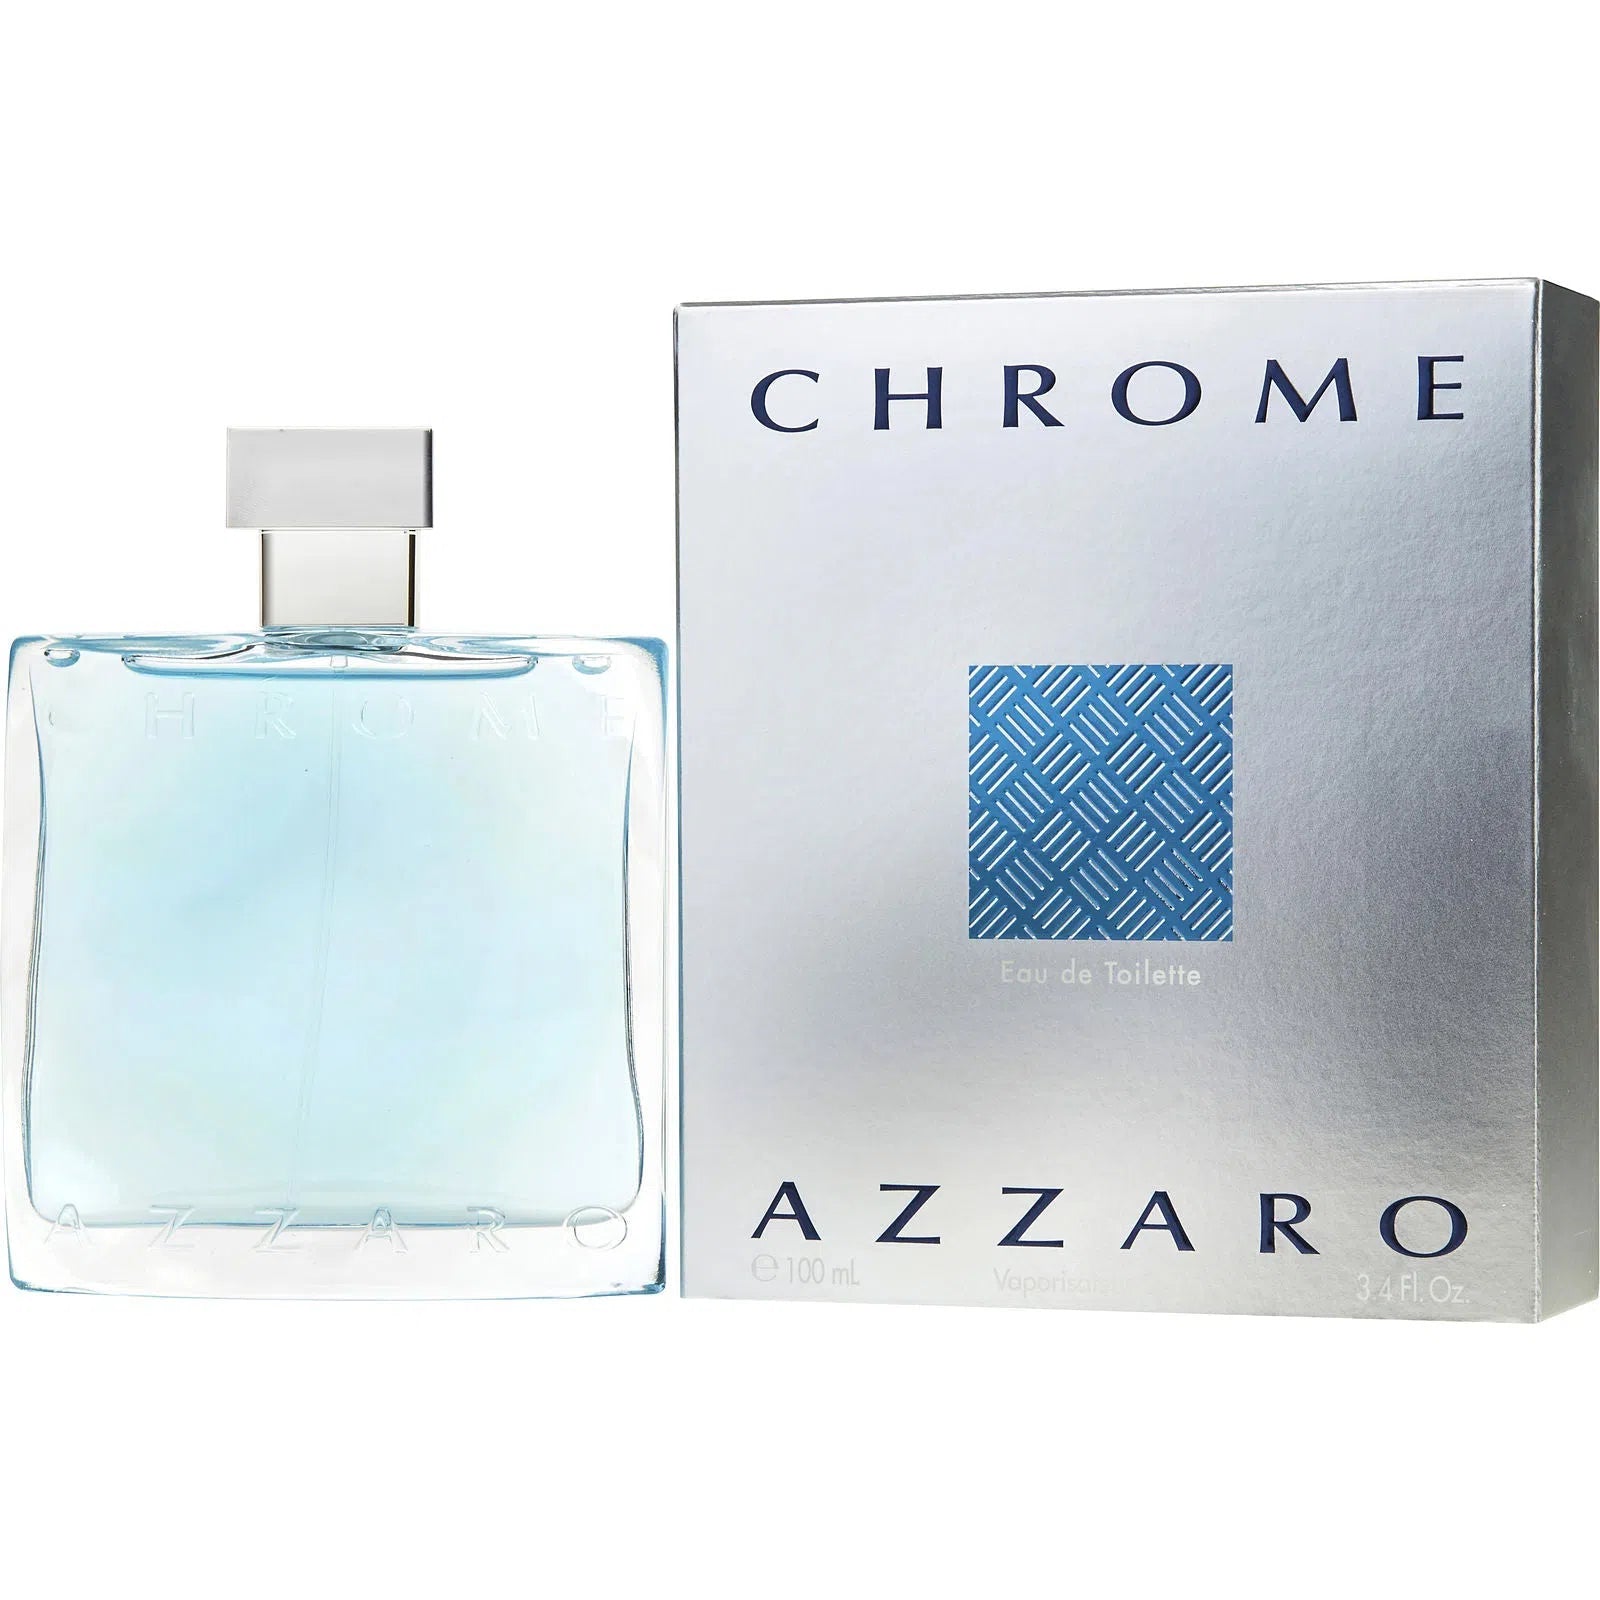 Perfume Azzaro Chrome EDT (M) / 100 ml - 3351500020409- Prive Perfumes Honduras